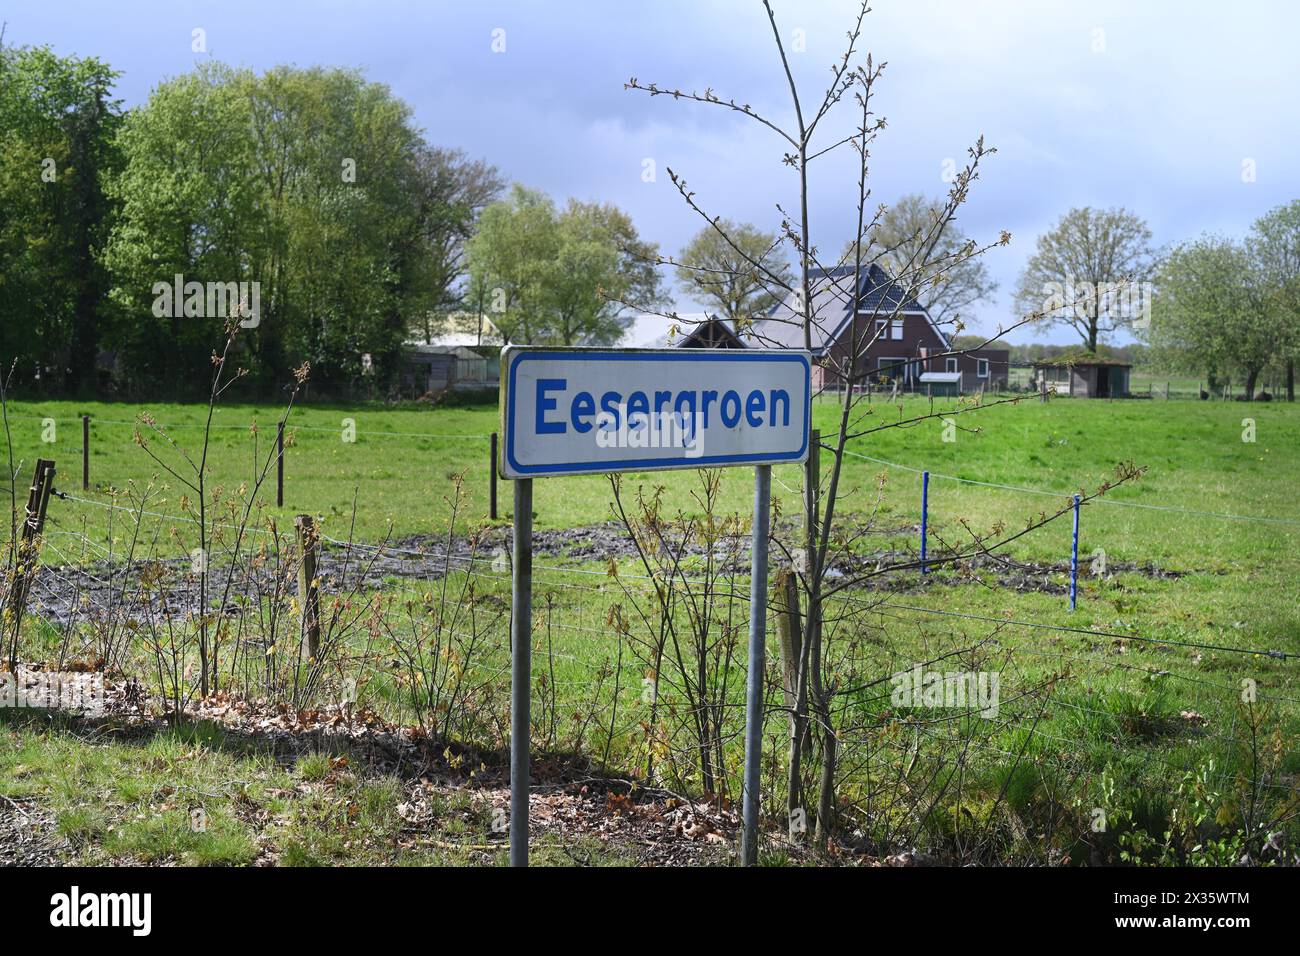 NL, Eesergroen: Der Frühling prägt die Landschaft, die Städte und die Menschen in der Provinz Drenthe in den Niederlanden. Das Dorf Eesergroen in Stockfoto